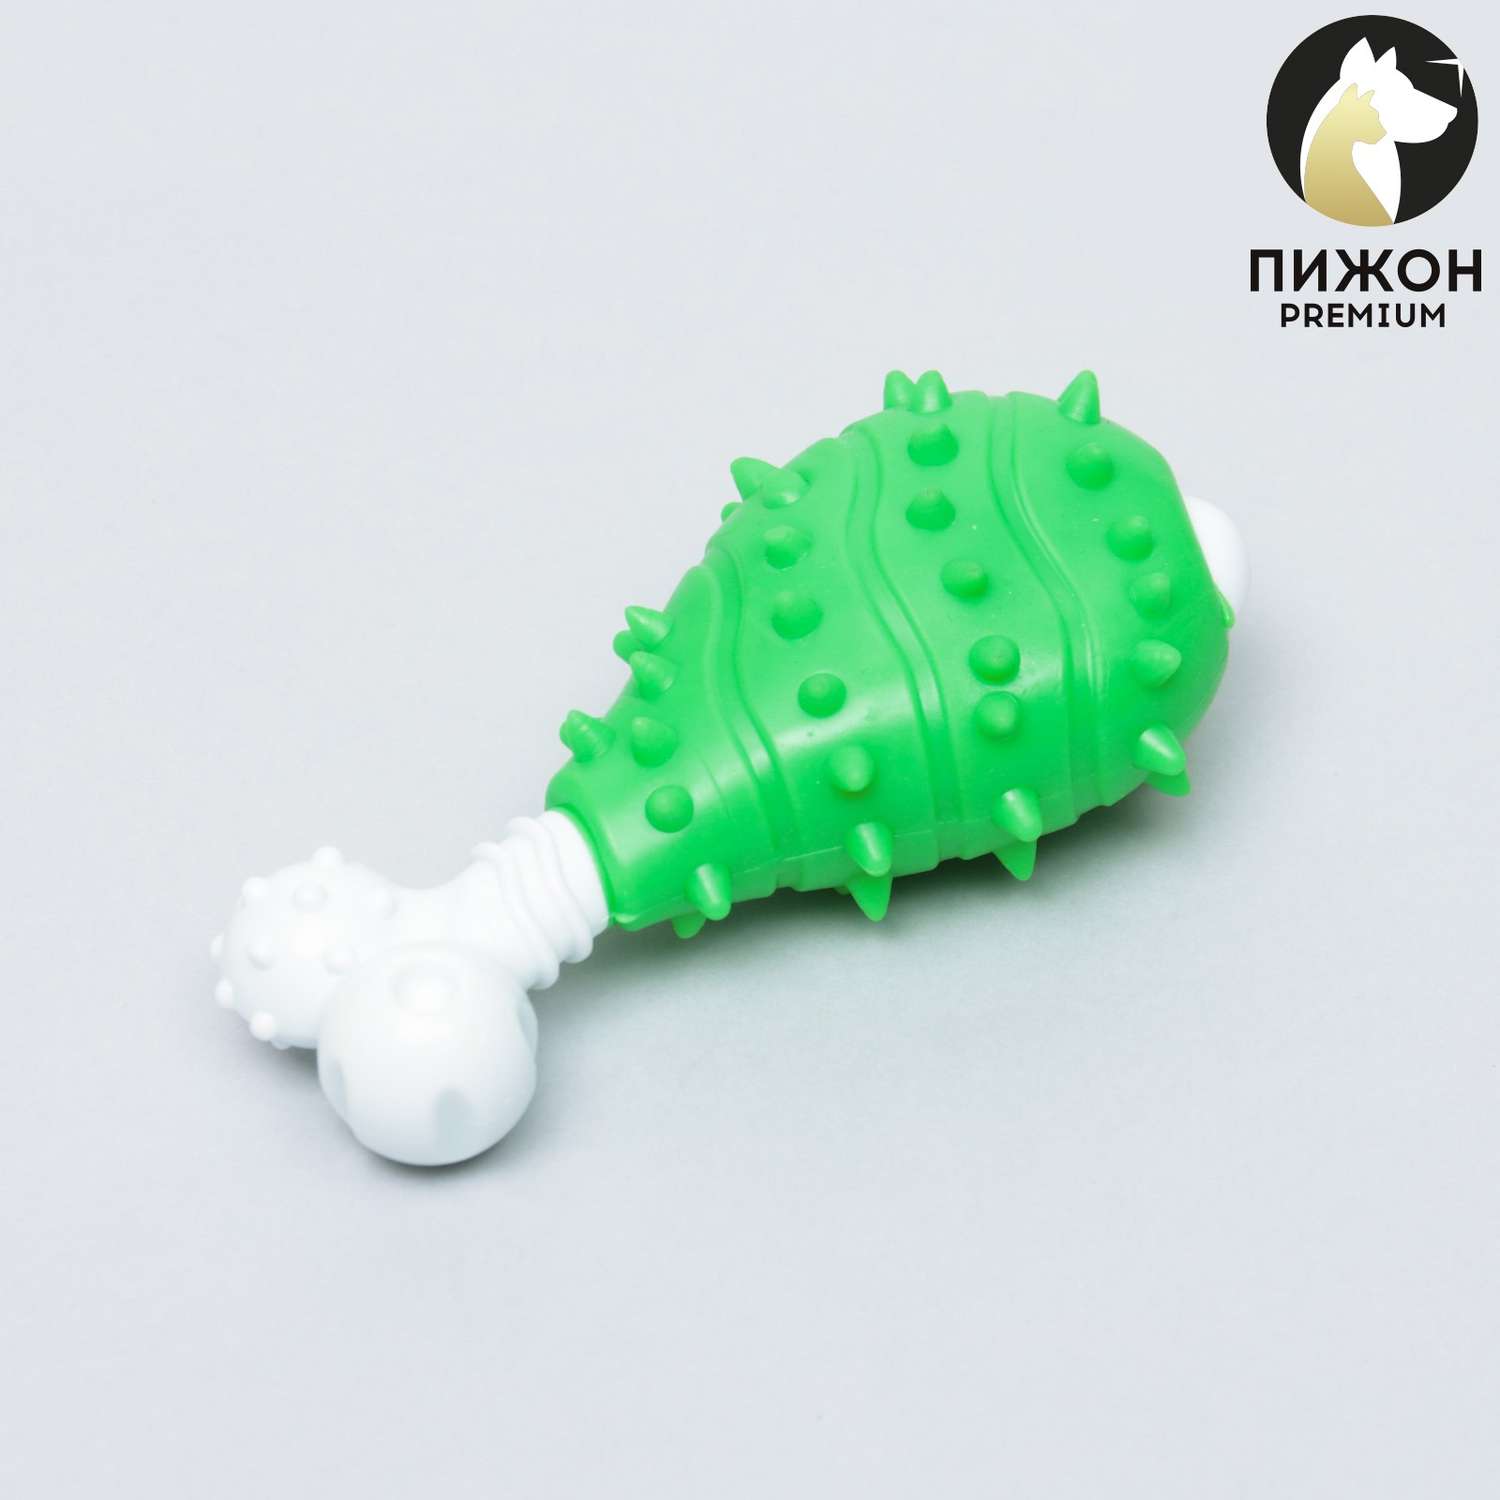 Игрушка Пижон двухслойная твердый и мягкий пластик «Голень» 12 см зелёная - фото 1